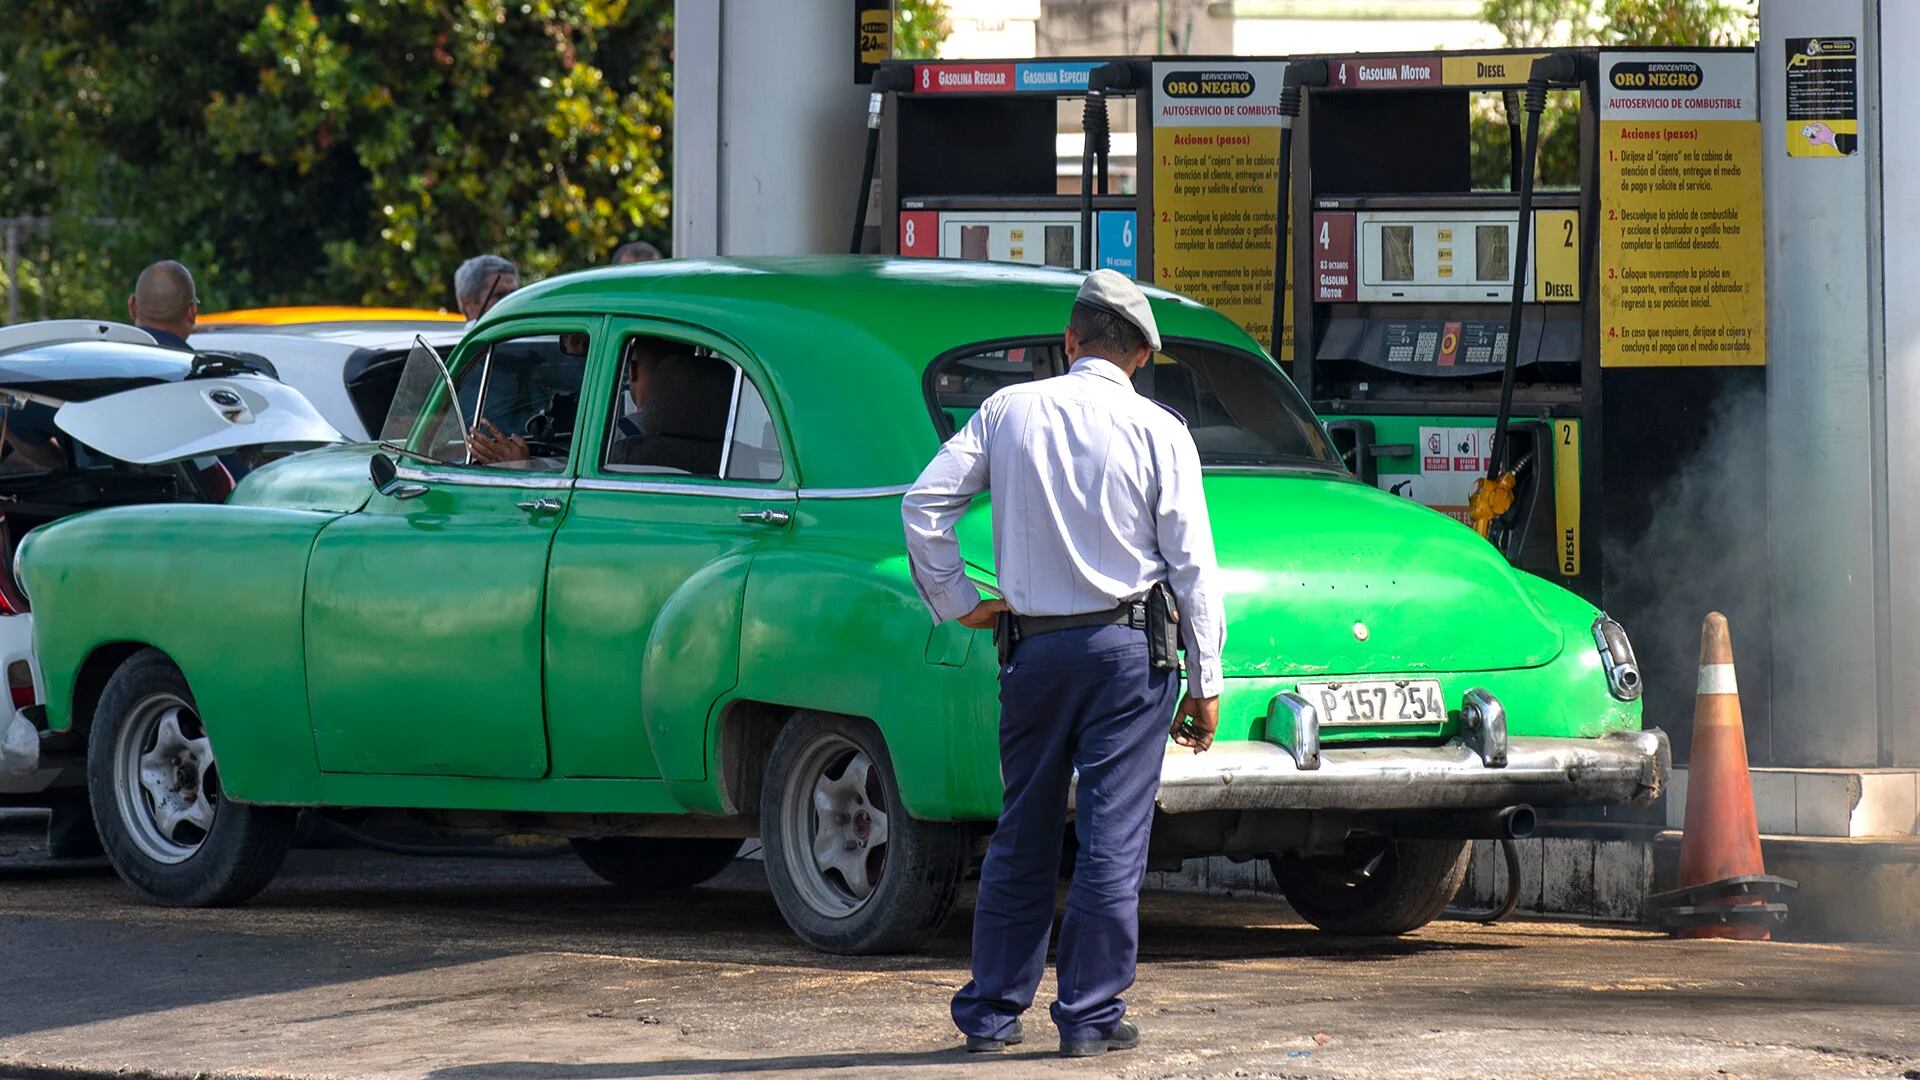 HAB101 La Habana (CUBA) 14/04/2023.- Un policía (de espaldas) observa a un coche antiguo en una gasolinera, hoy en La Habana (Cuba). El presidente de Cuba, Miguel Díaz-Canel, aseguró este viernes que el desabastecimiento de combustible en la isla se debe al "incumplimiento" de los países suministradores que también atraviesan una "situación energética compleja". "No es (por) insuficiencia, ni problemáticas de las instituciones, sino por incumplimiento de los países que nos suministran", precisó Díaz-Canel, en la primera declaración del Gobierno en las casi dos semanas de crisis de carburantes en el país. EFE/Yander Zamora